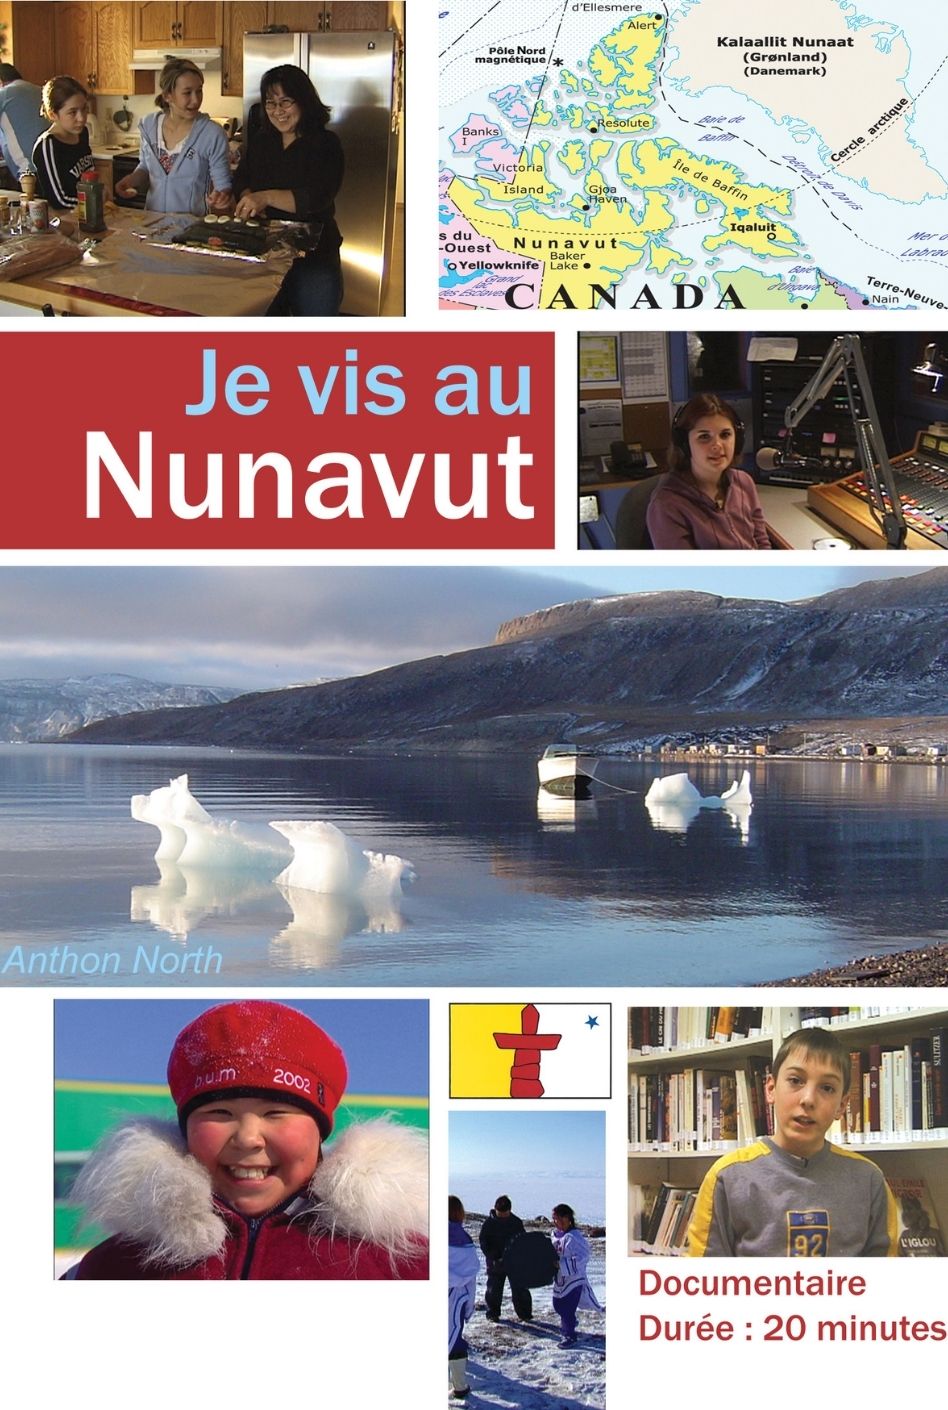 images/bottin_films/06f8e0fe5b9547a4451c7854b02fe21a-Je-vis-au-Nunavut-web.jpg#joomlaImage://local-images/bottin_films/06f8e0fe5b9547a4451c7854b02fe21a-Je-vis-au-Nunavut-web.jpg?width=948&height=1410